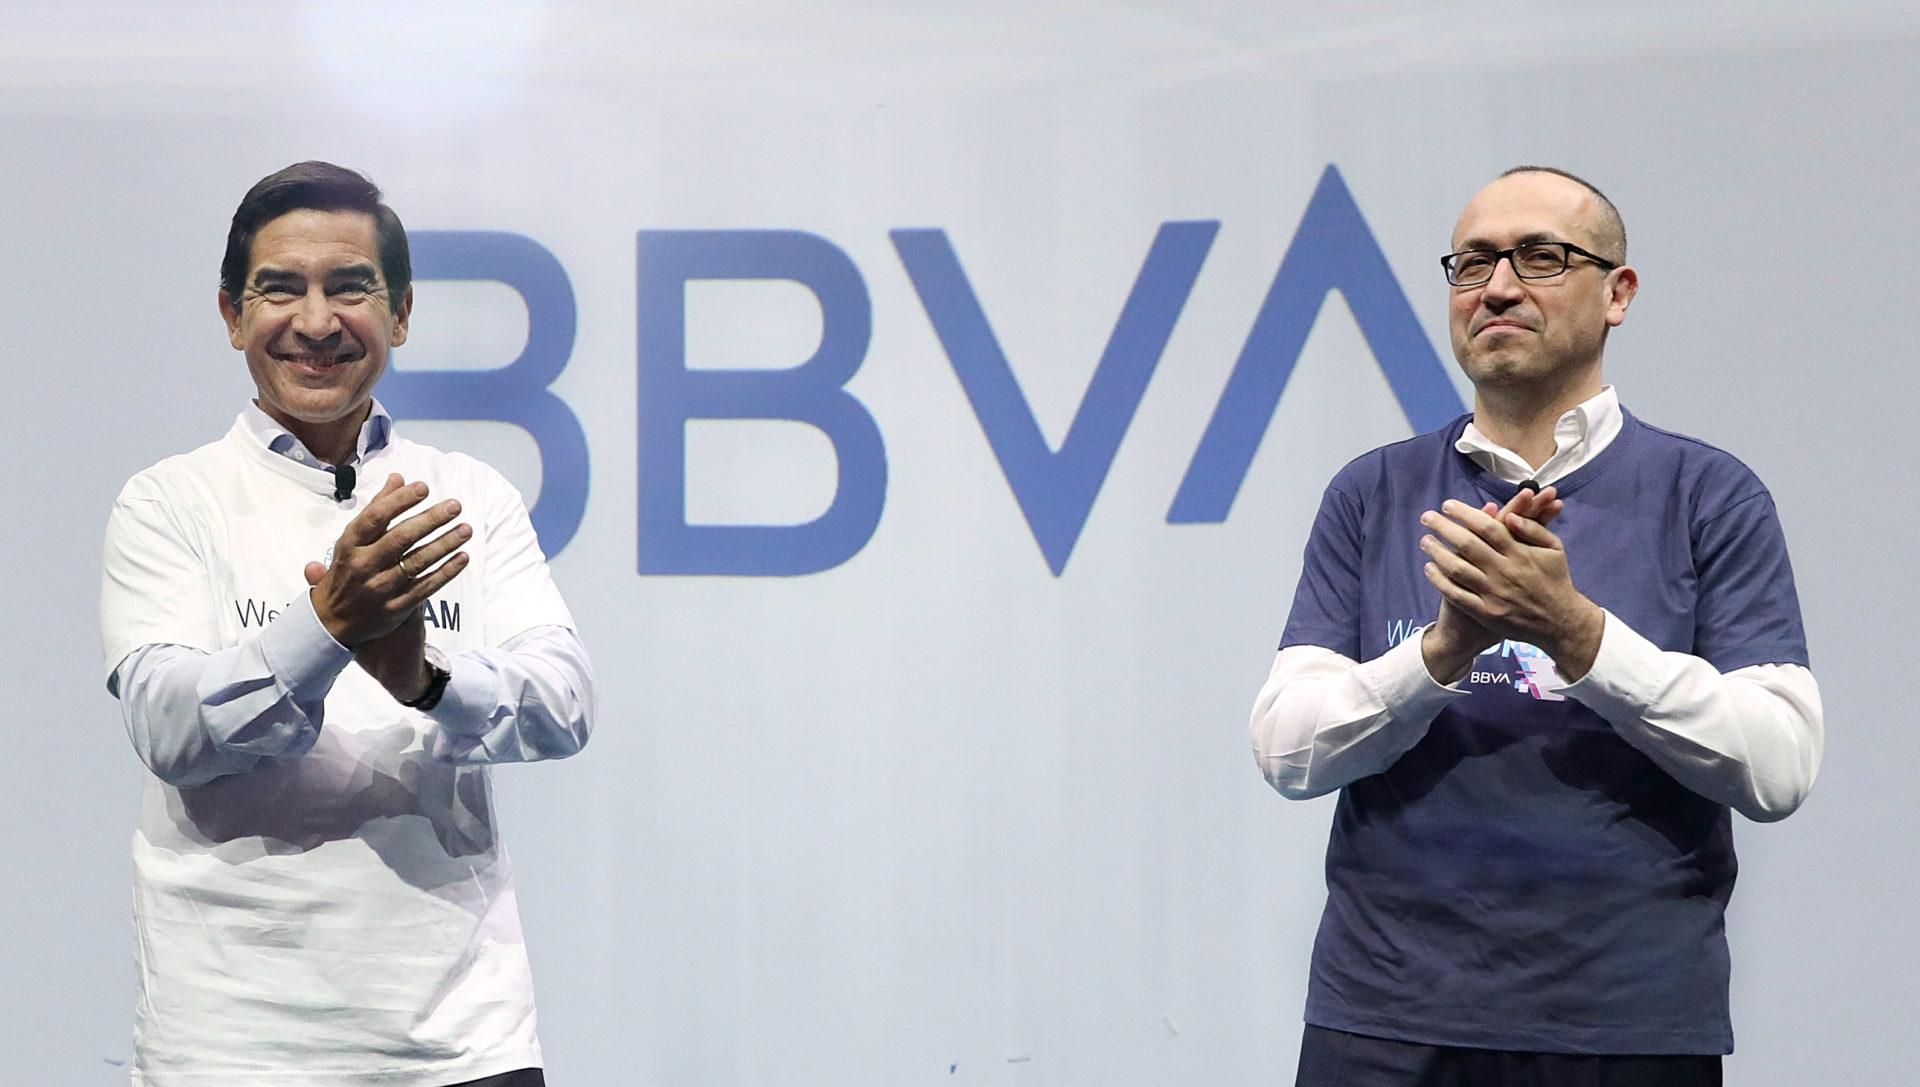 Torres Vila y Onur Genç aplauden al nuevo logotipo del banco - BBVA